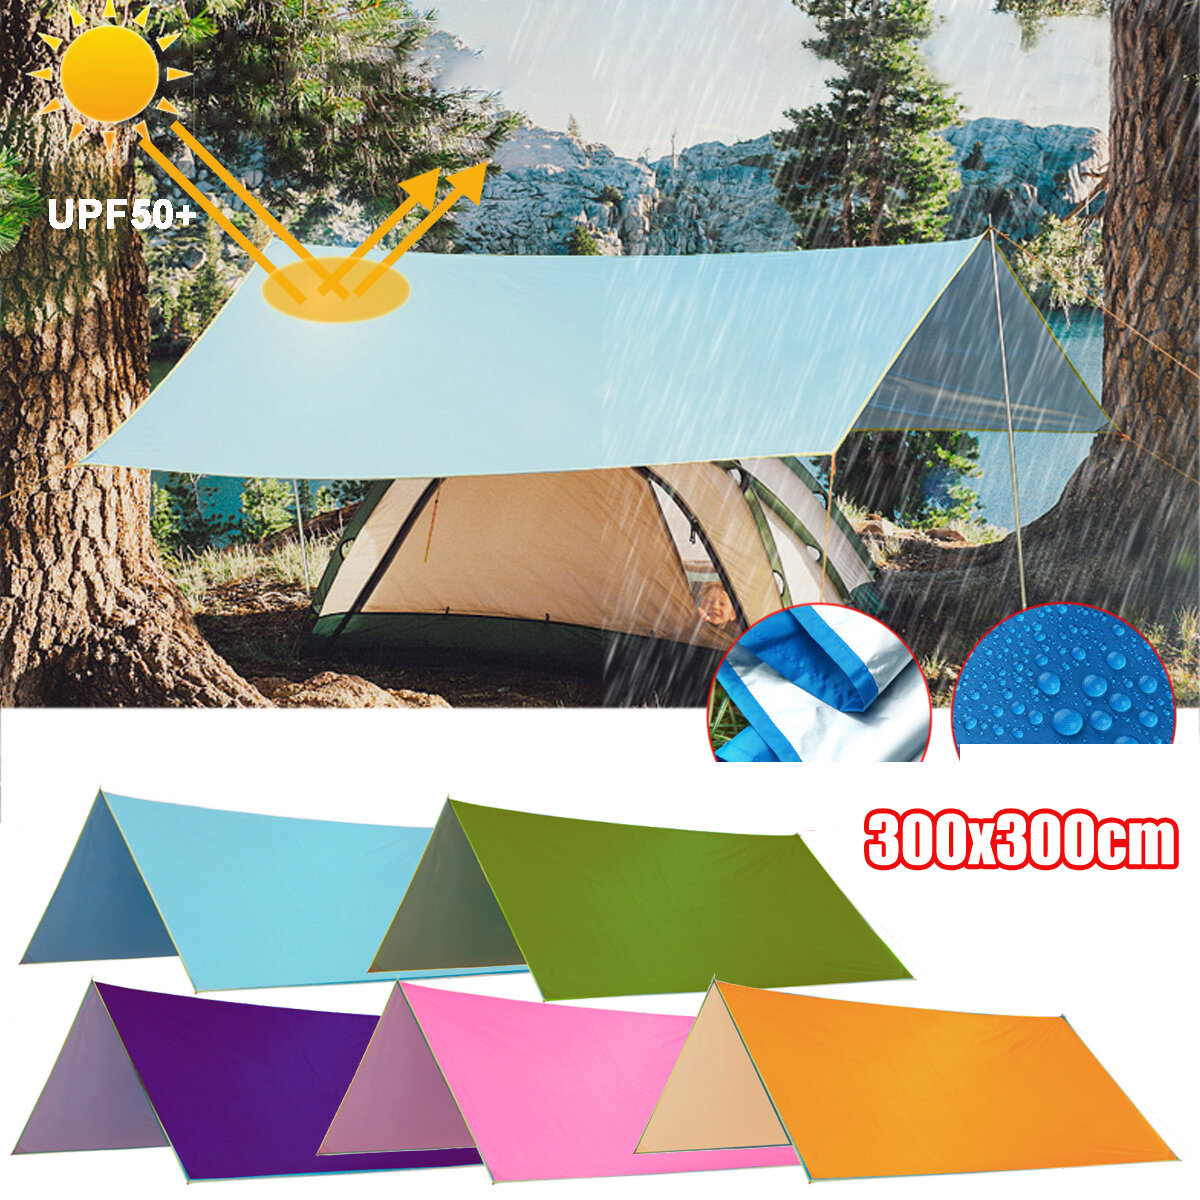 3x3m multifunción Anit-UV tienda de campaña lluvia sol sombra toldo refugio hamaca estera de Picnic para acampar senderismo viajes